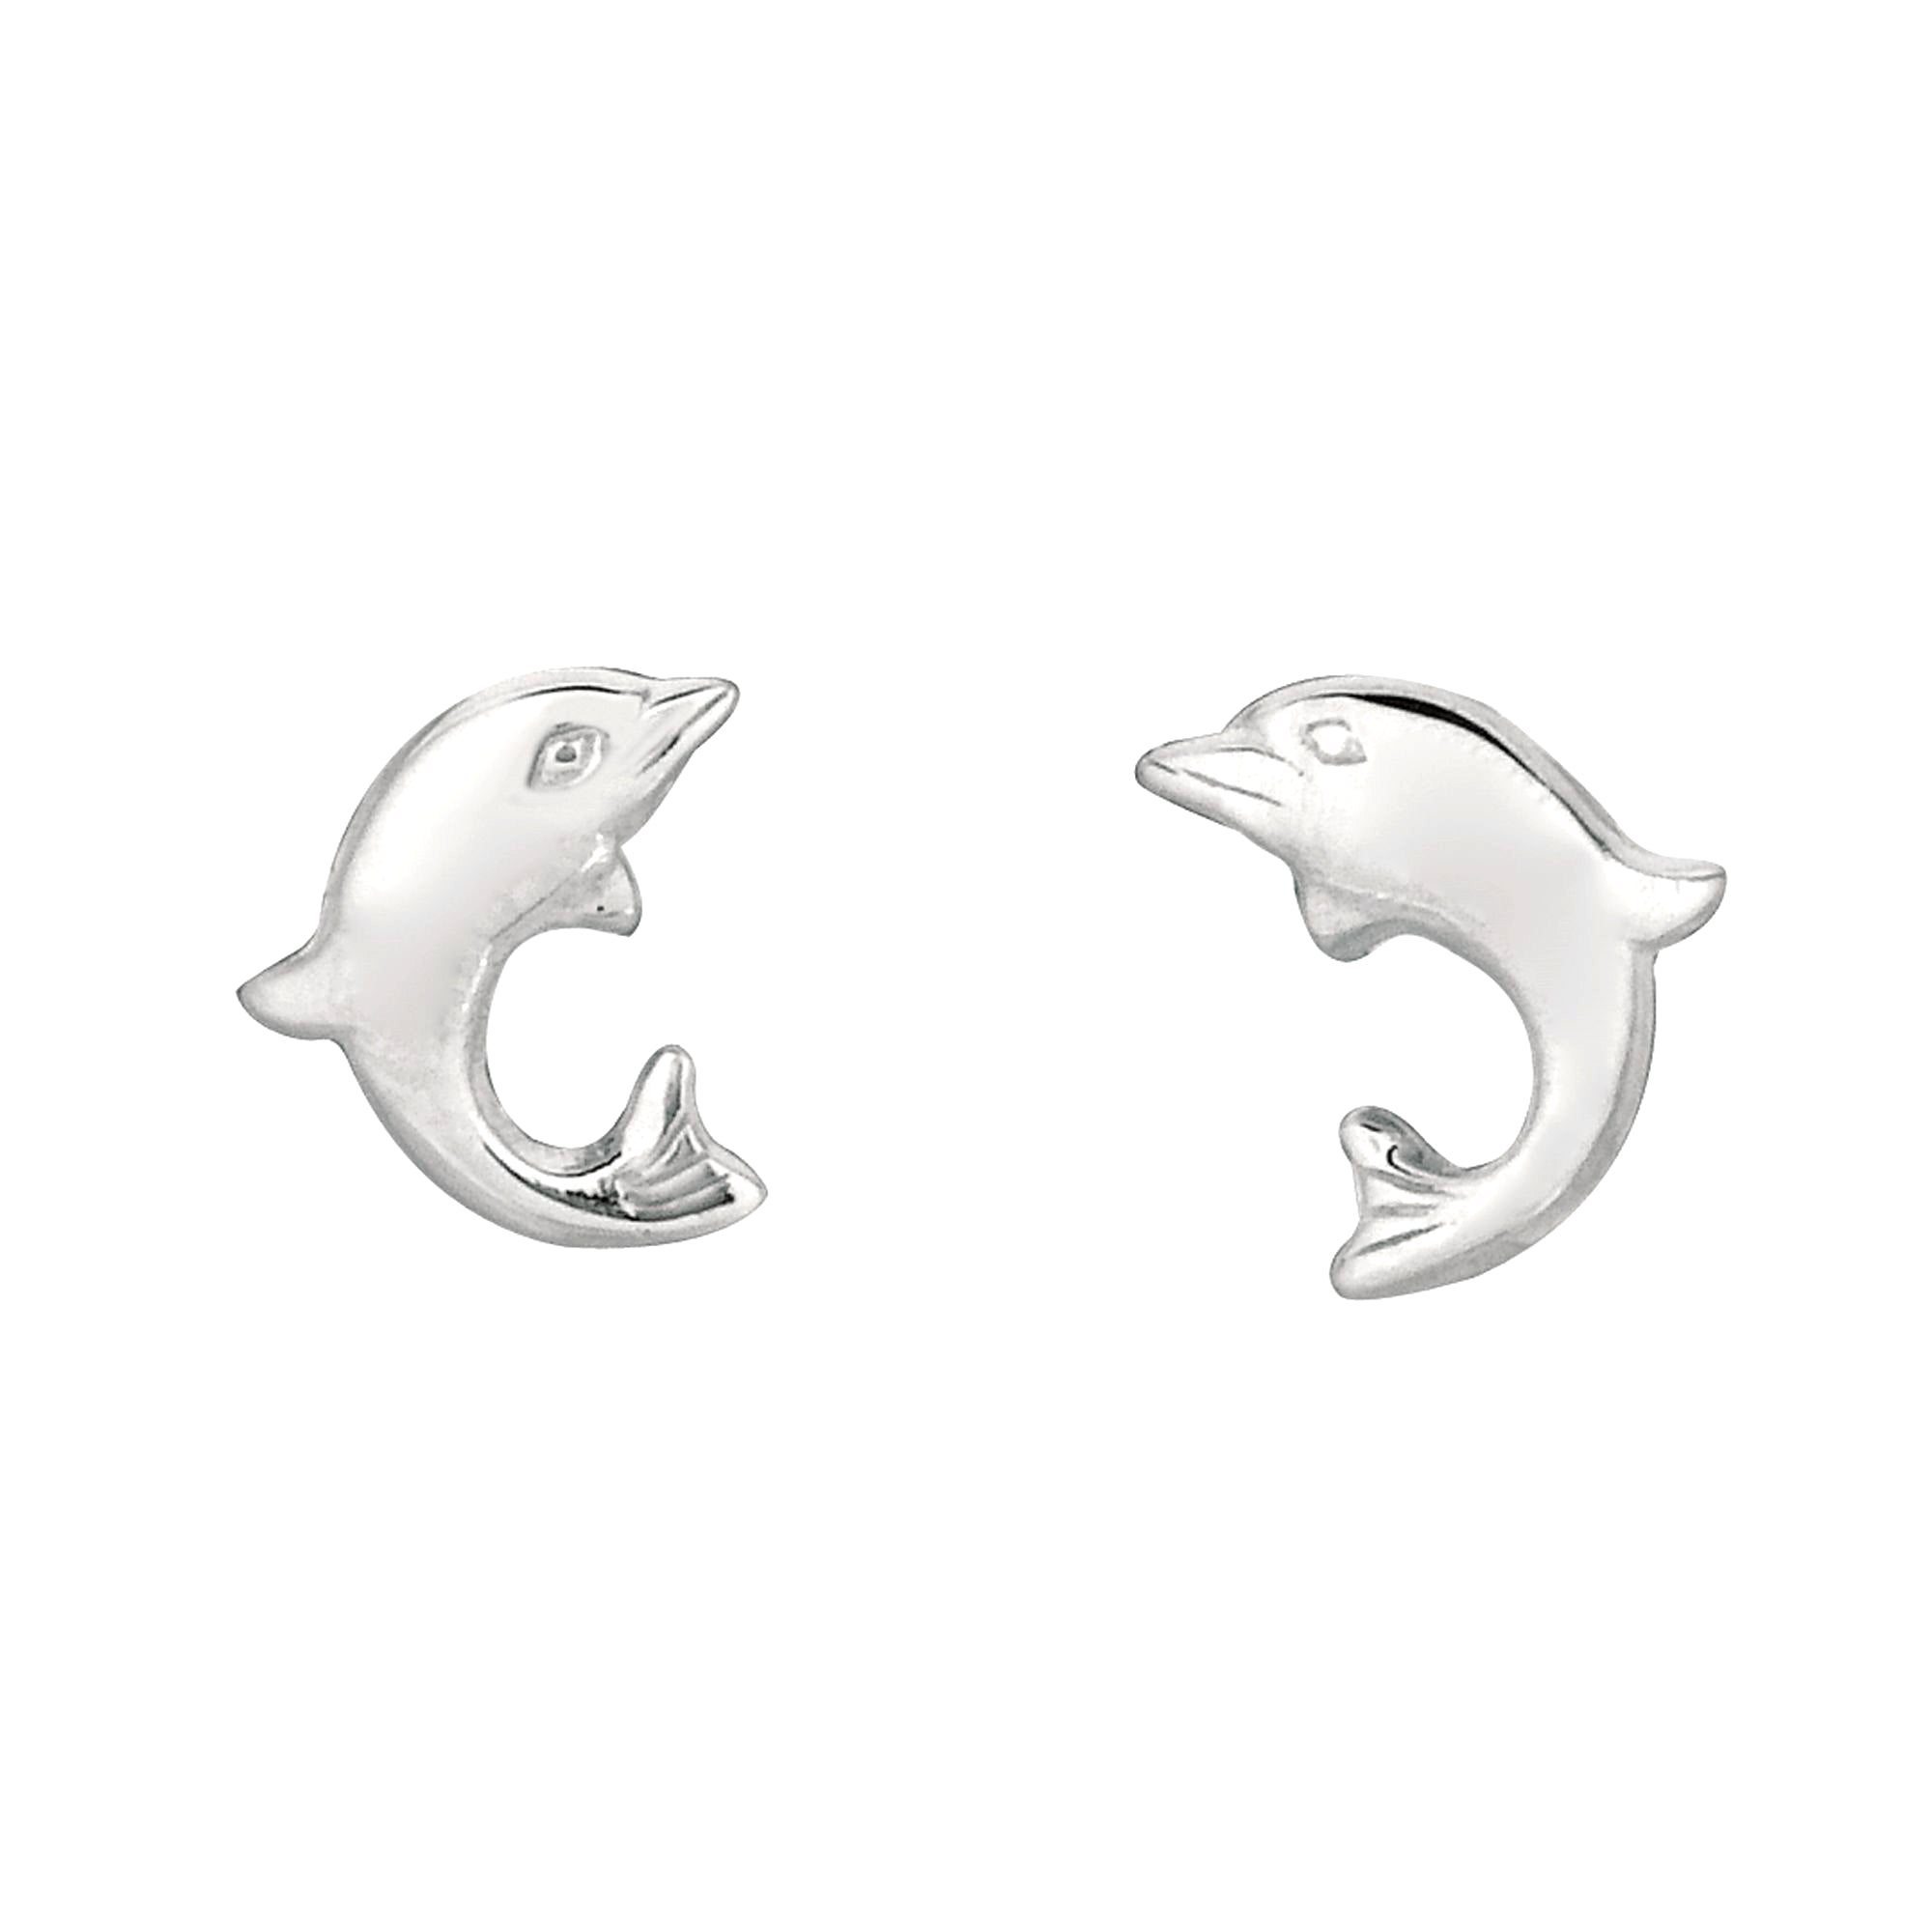 Pendientes de plata de ley con forma de delfín, joyería fina de diseño para hombres y mujeres.